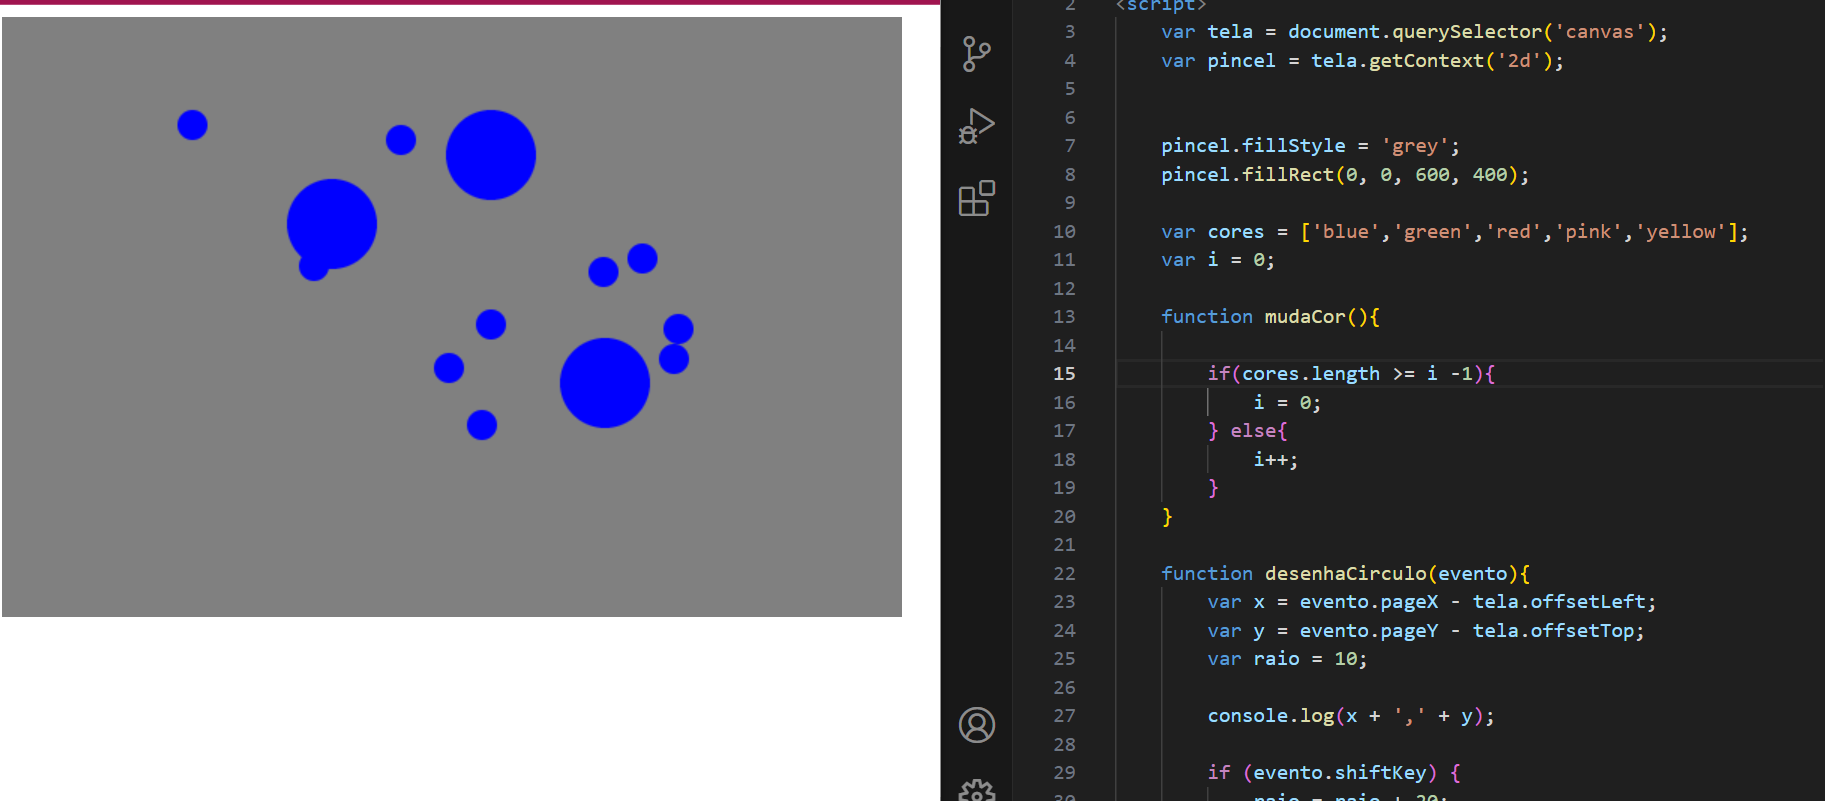 Circulos pequenos  e grandes em azul em uma tela cinza, ao lado o códig no VScode